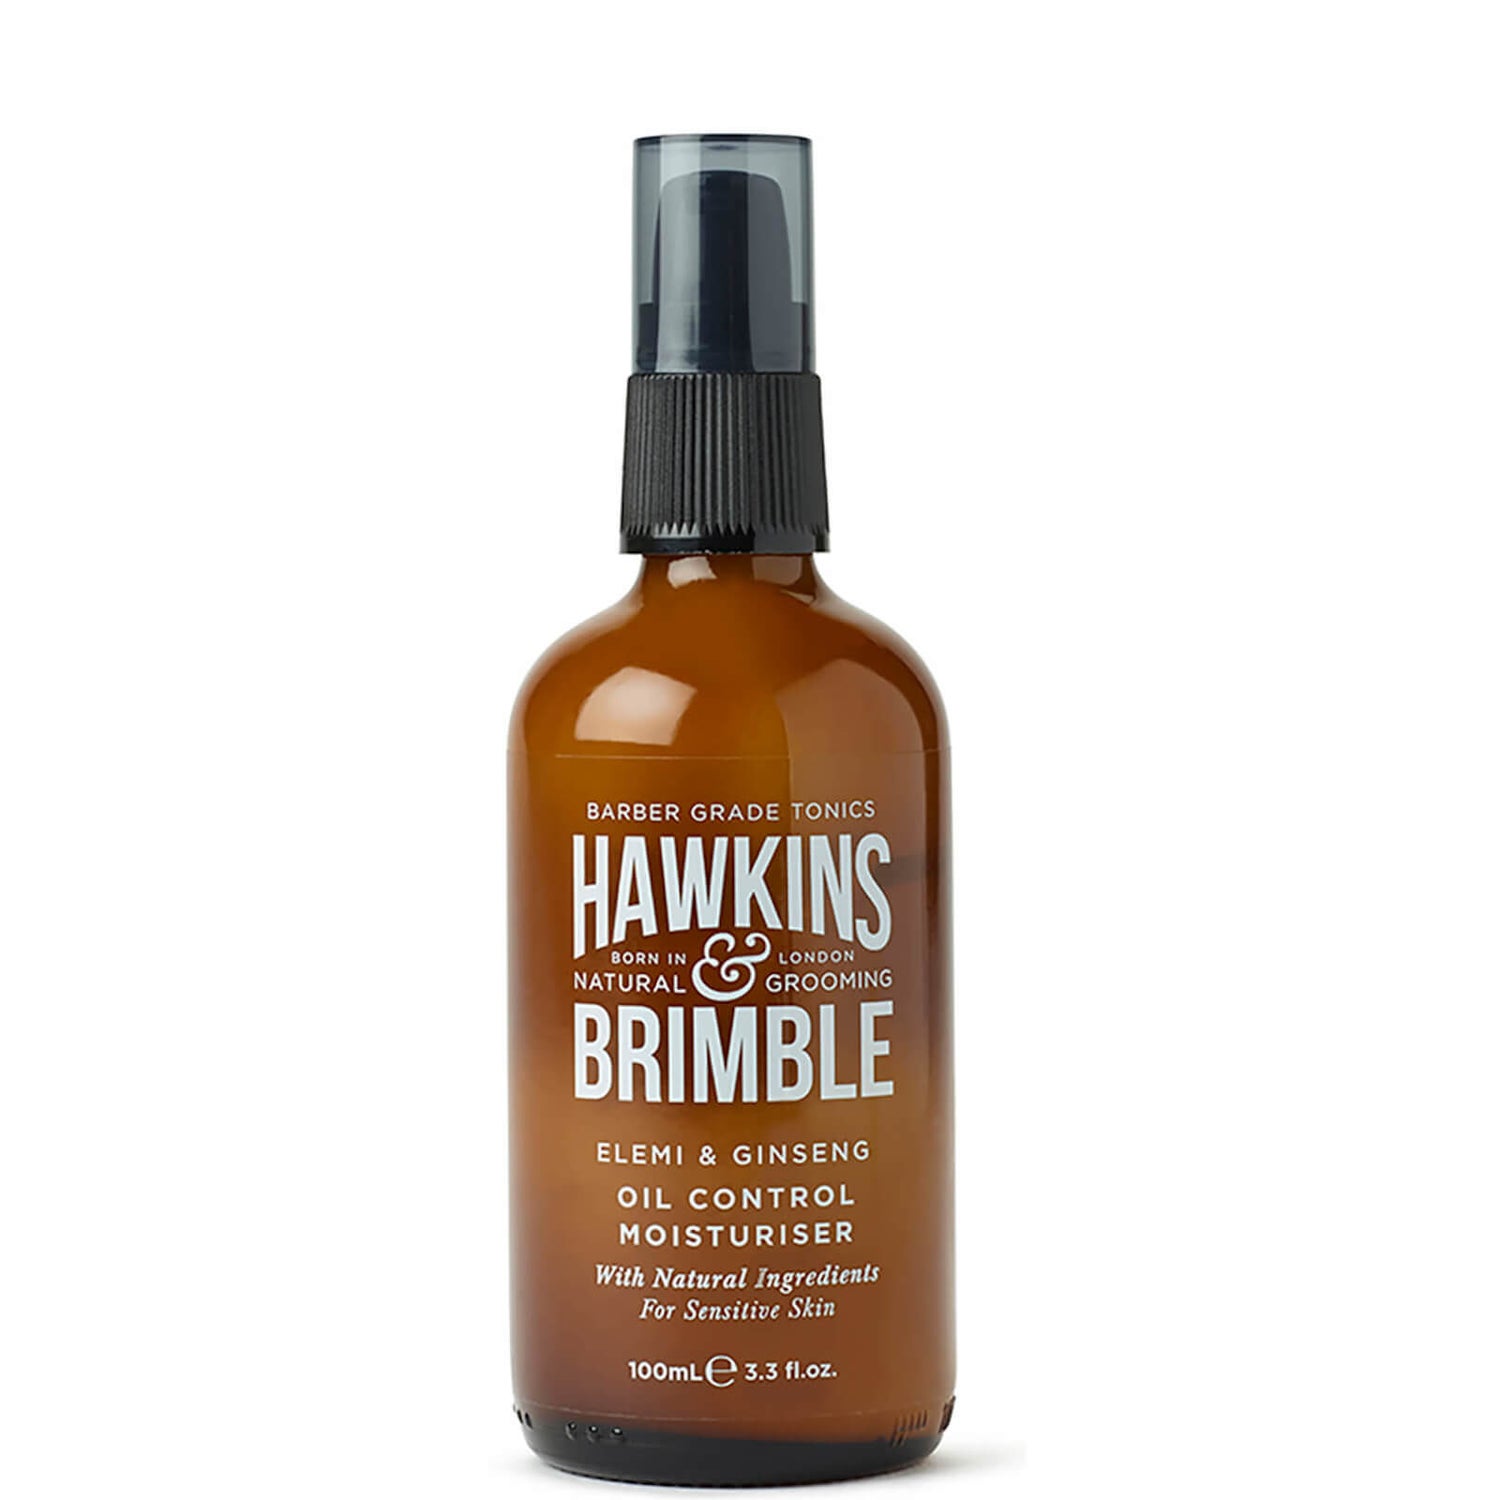 Hawkins & Brimble Natural Oil Control Moisturiser krem nawilżający do twarzy stabilizujący wydzielanie sebum (100 ml)